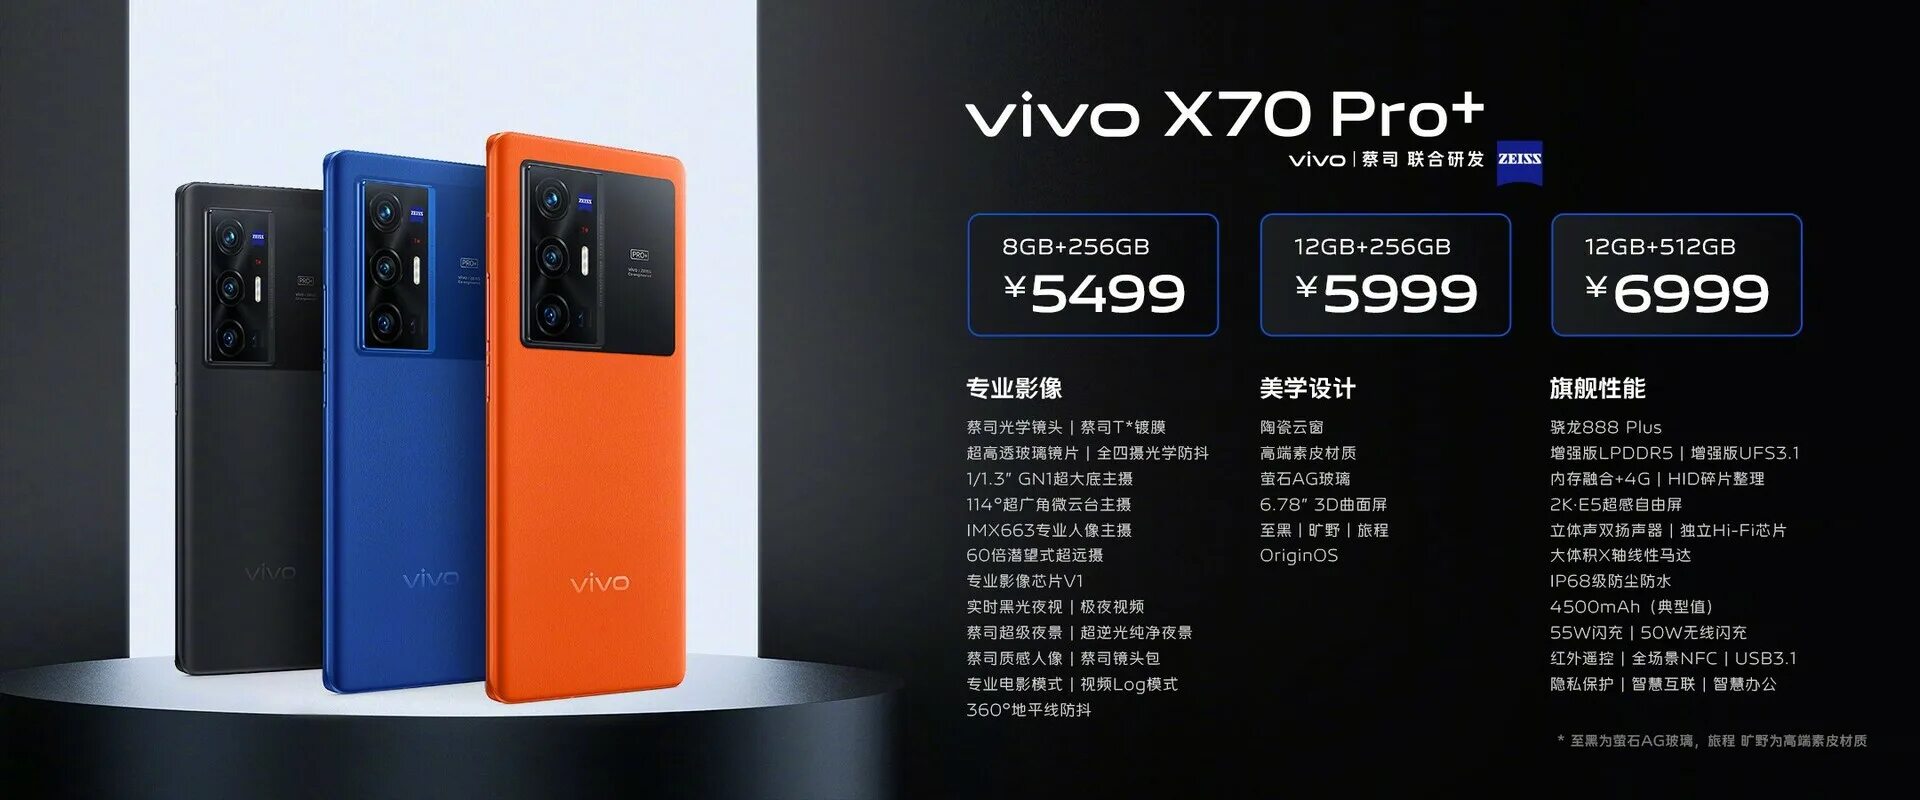 Vivo x pro plus. X70pro+. X70 Pro Plus. Vivo x70 Pro Plus характеристики. X70 Pro.